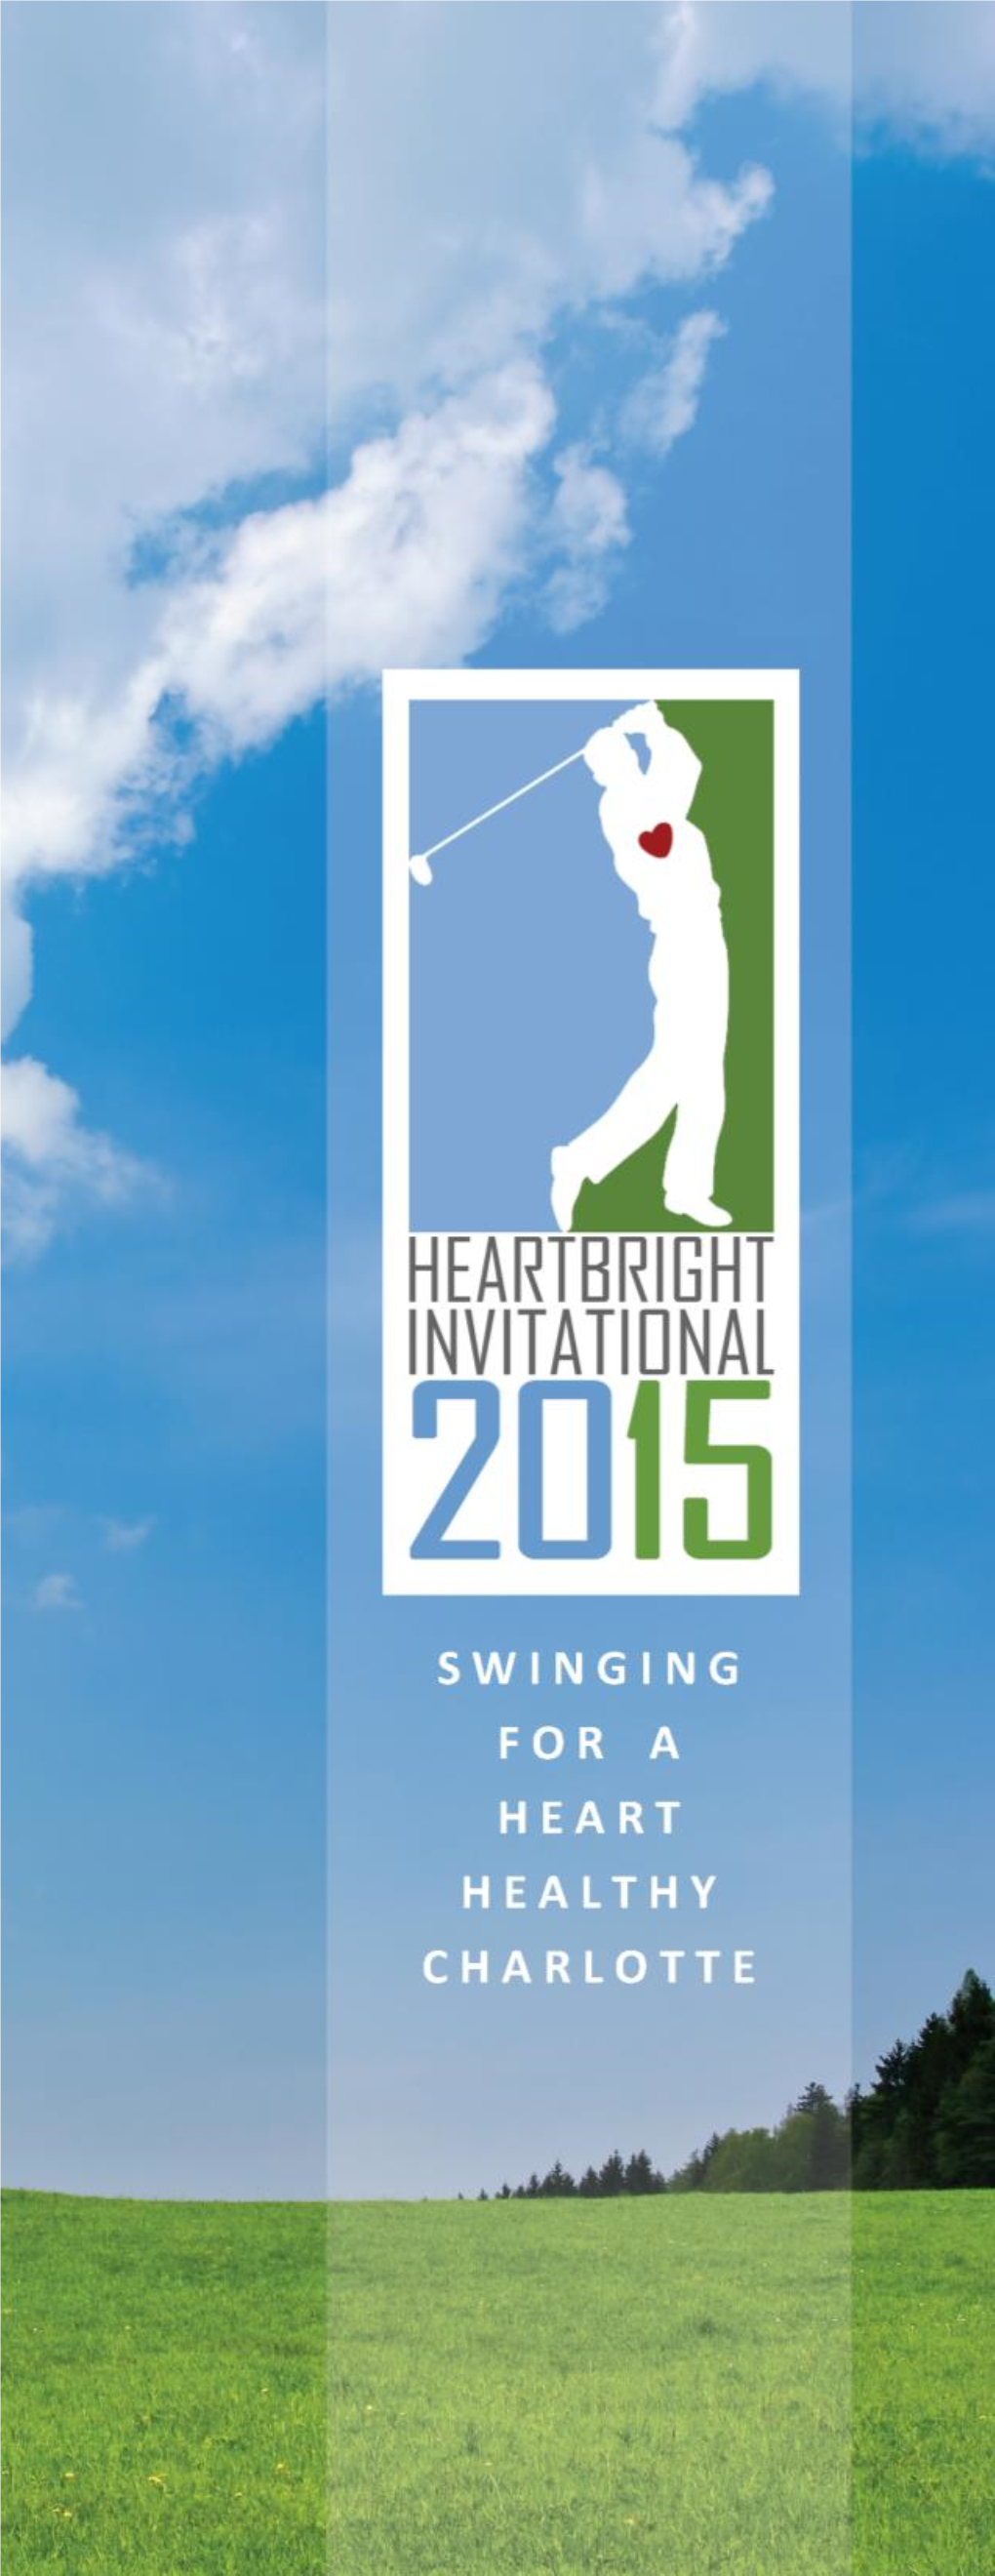 2015 Heartbright Invitational